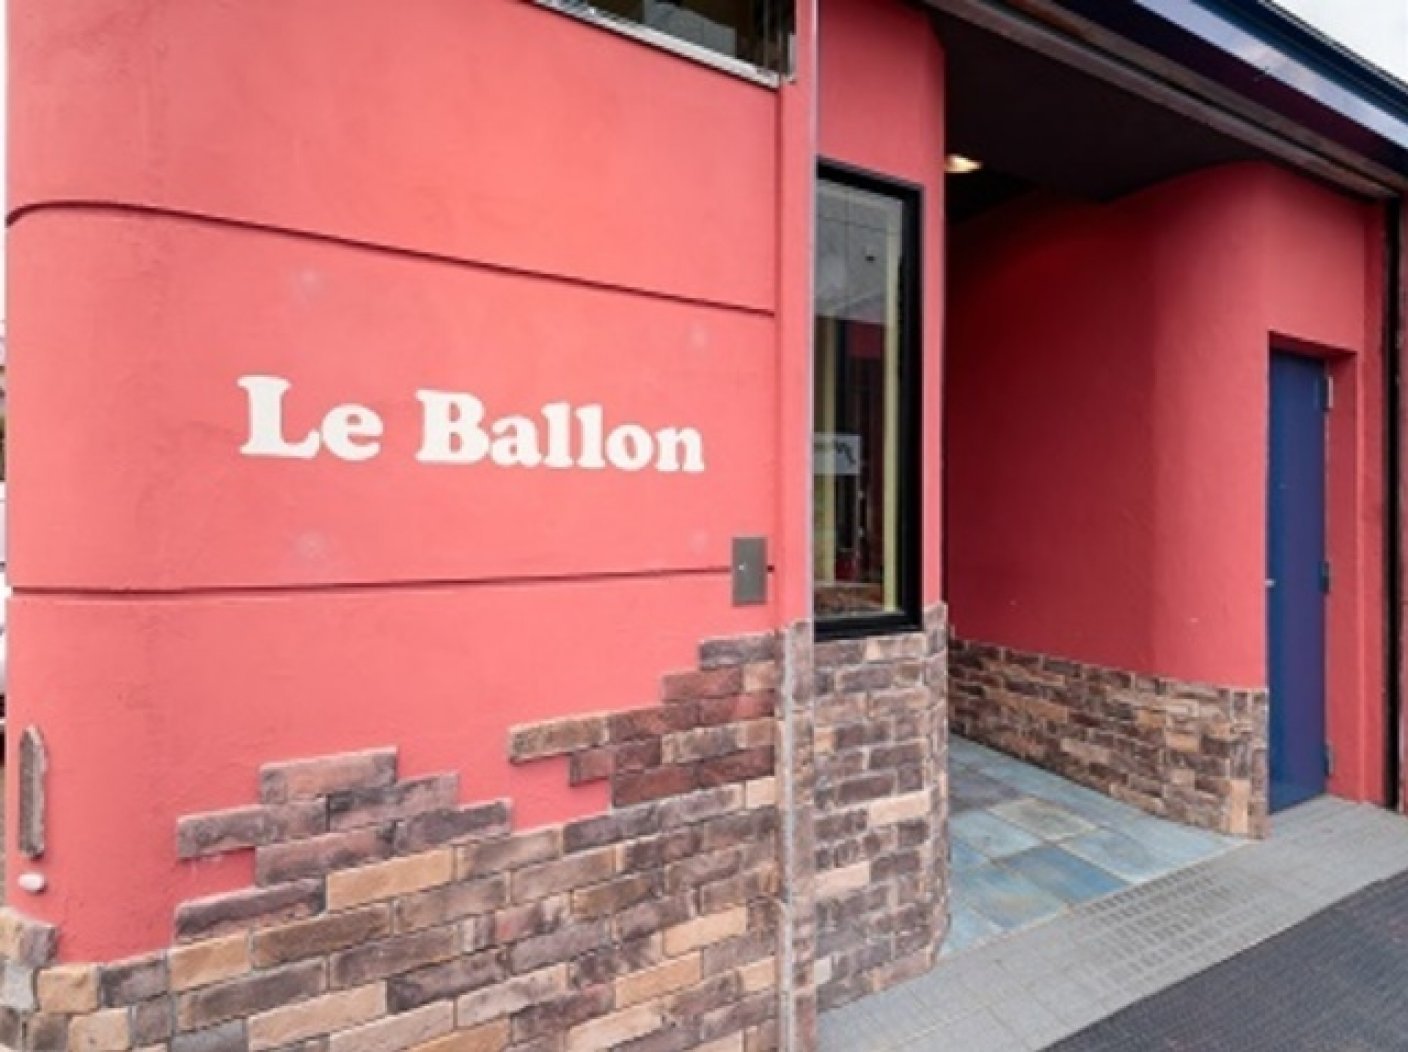 Le Ballonの写真 1